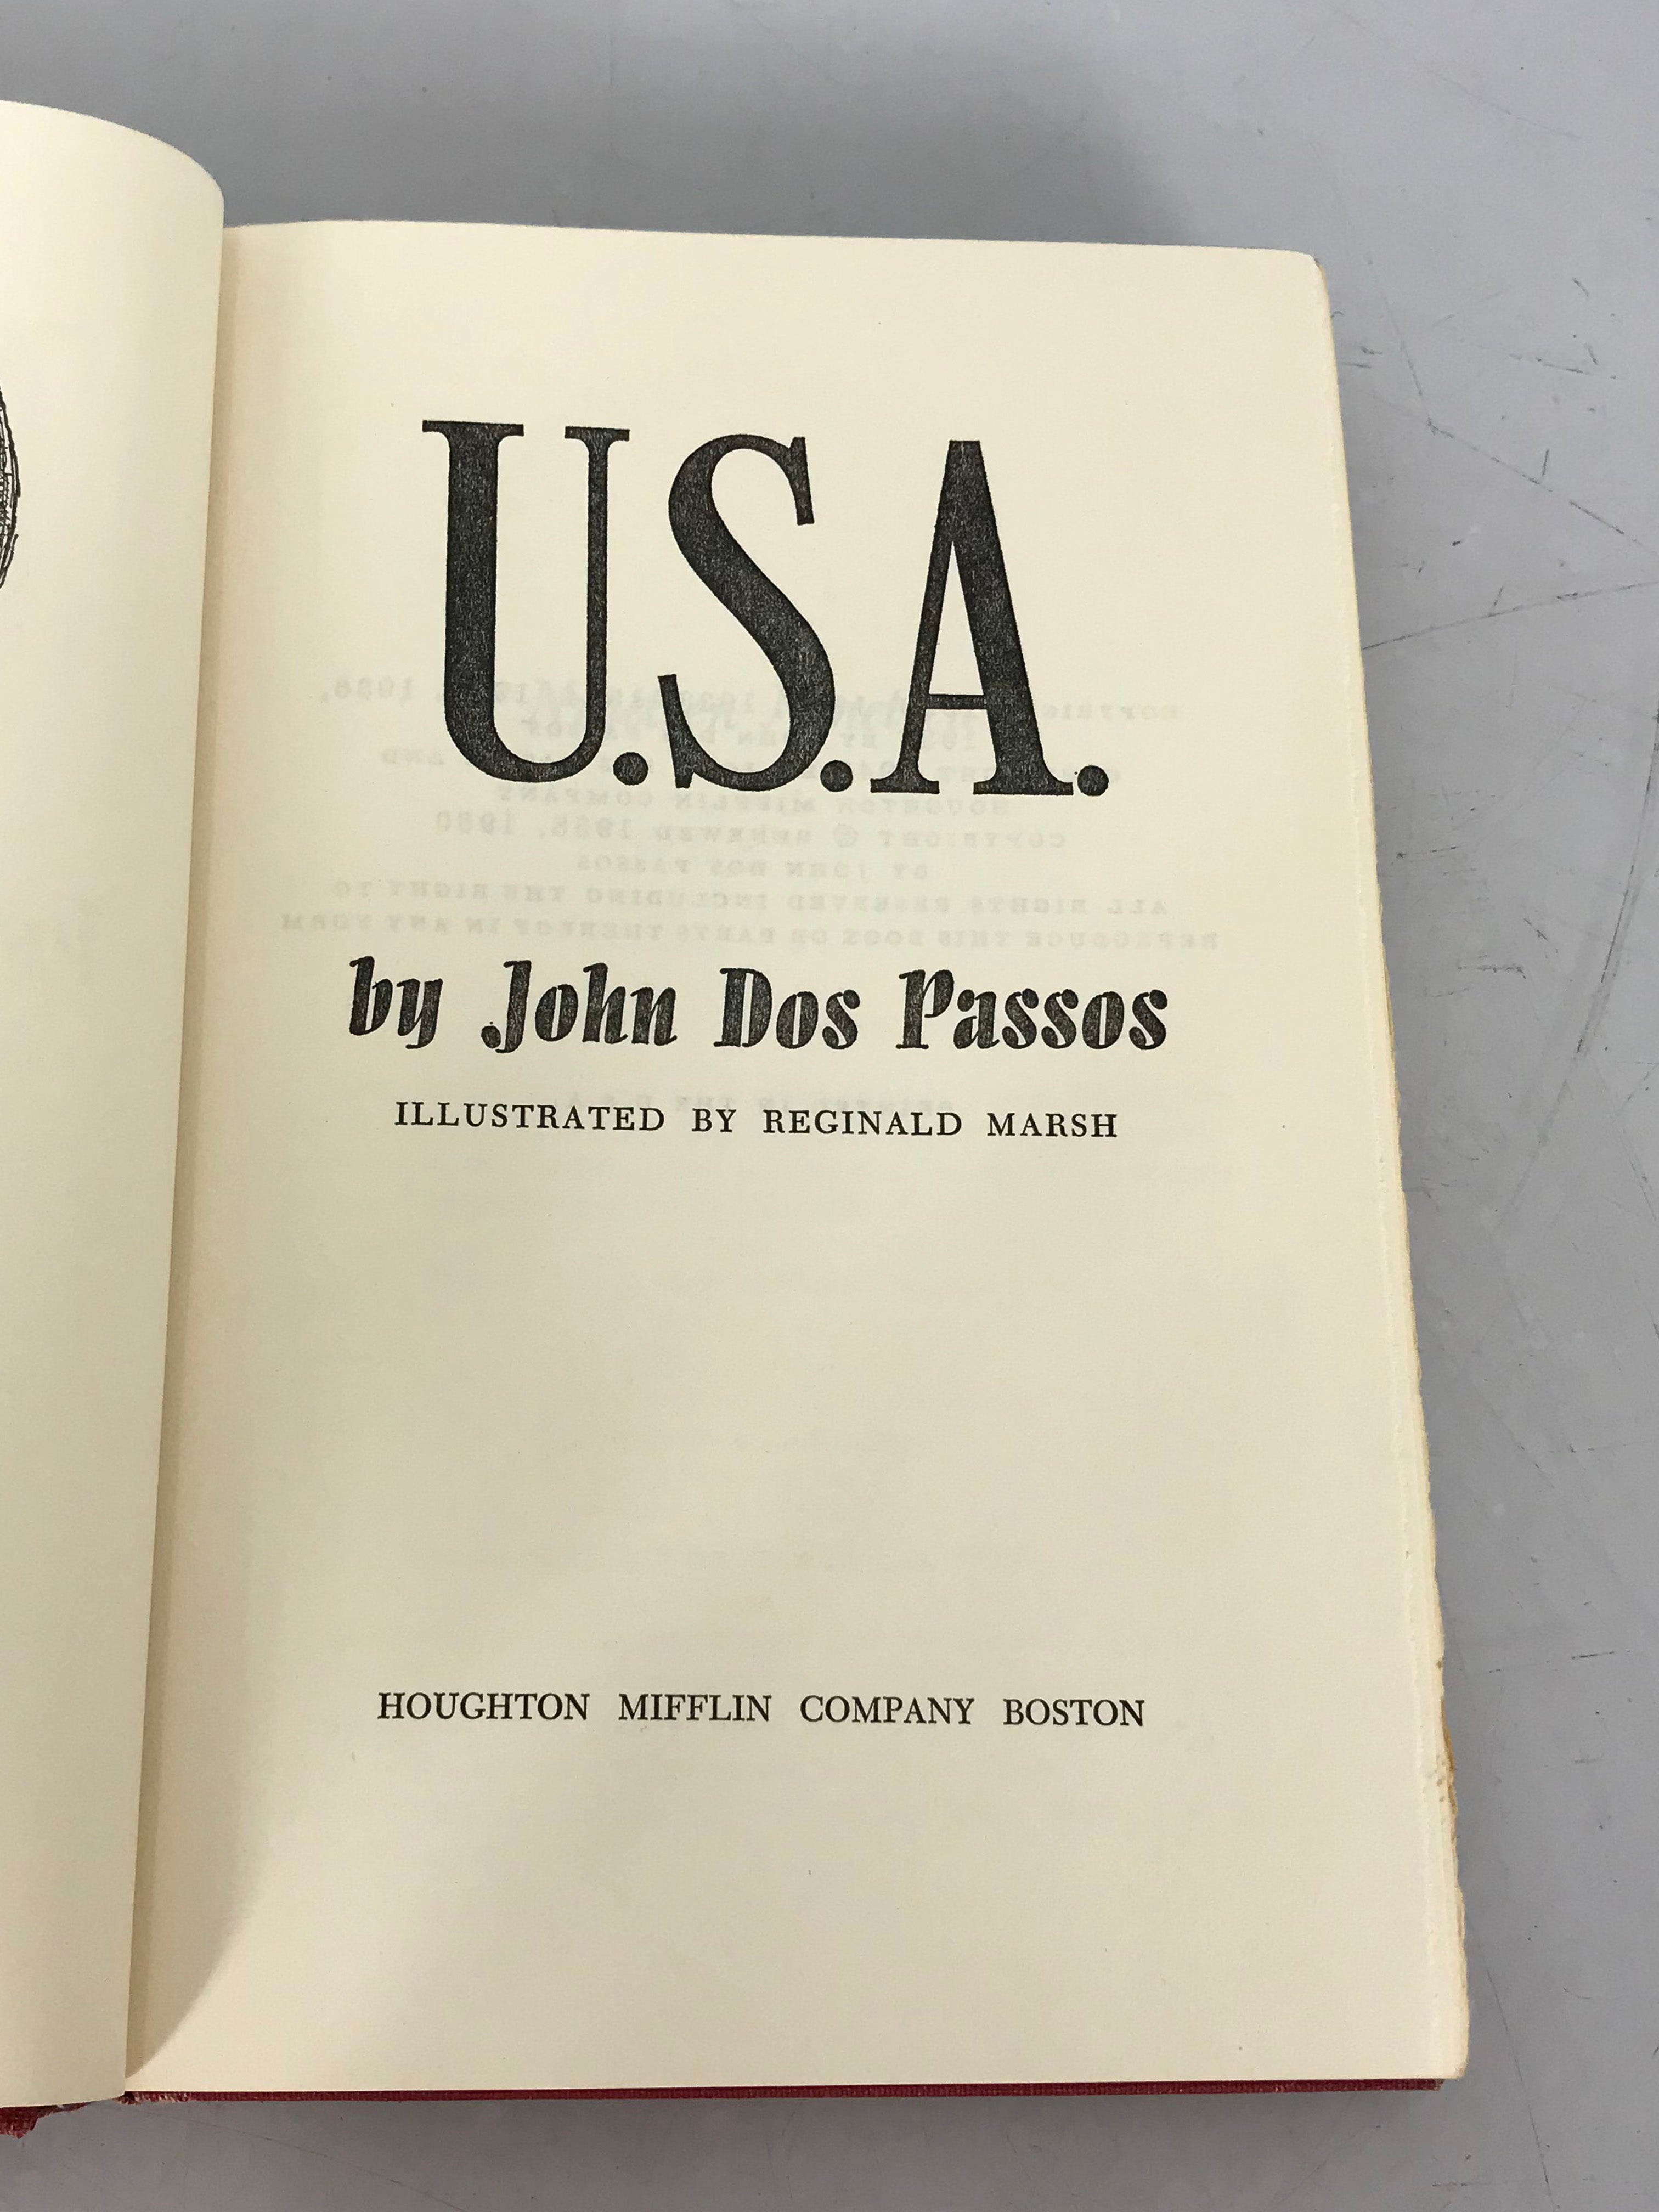 John Dos Passos USA Trilogy 42nd Parallel, 1919, The Big Money 1960 HC